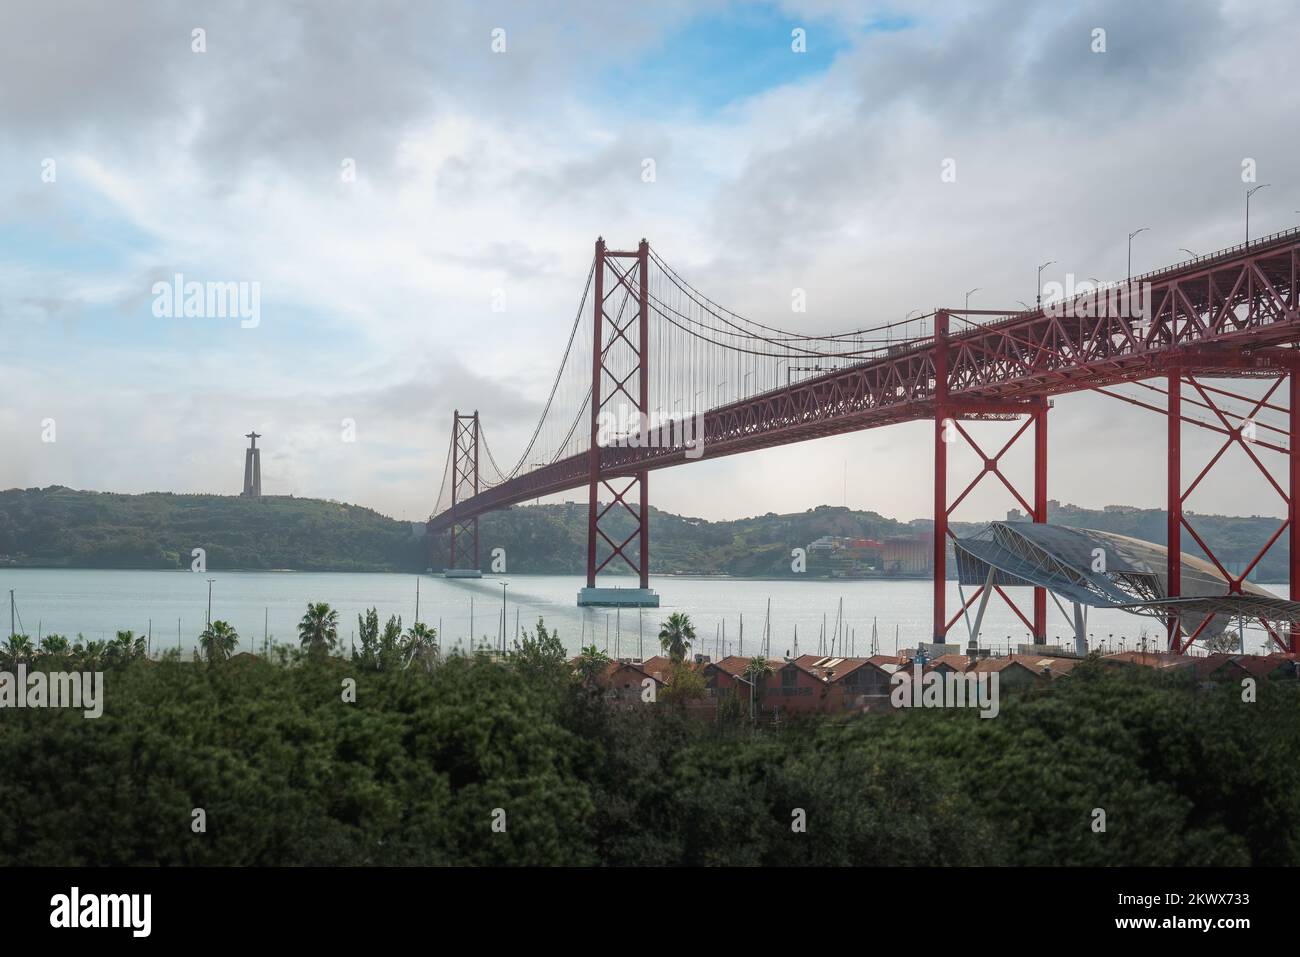 Brücke 25 de Abril, Heiligtum von Christus, Skyline des Königs und Fluss Tejo (Rio Tejo) - Lissabon, Portugal Stockfoto